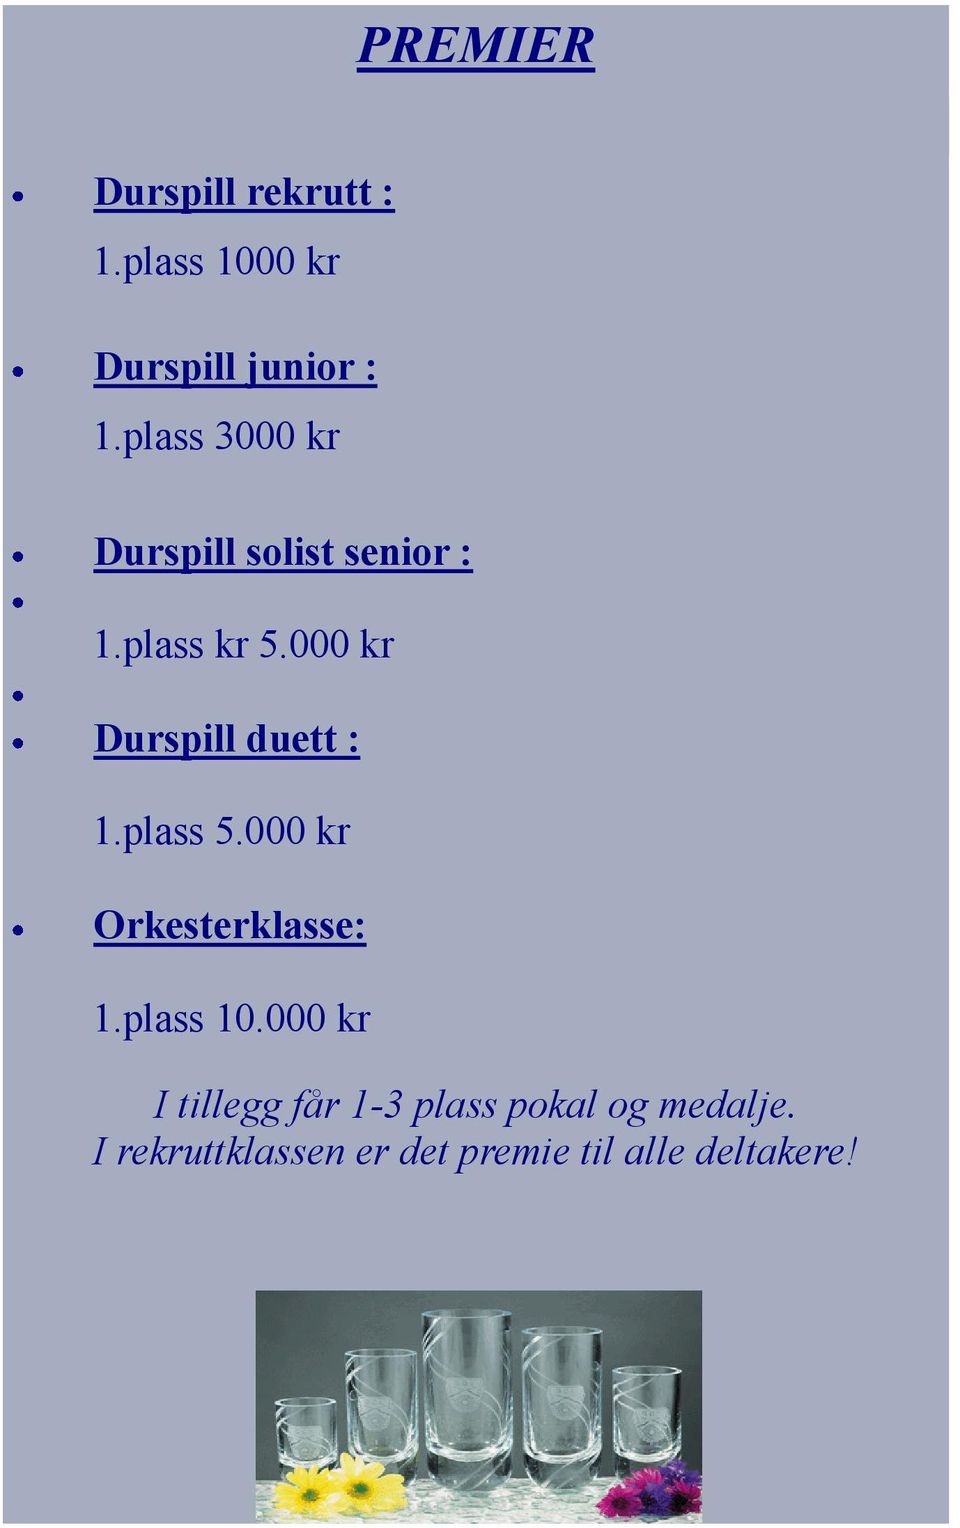 000 kr Durspill duett : 1.plass 5.000 kr Orkesterklasse: 1.plass 10.